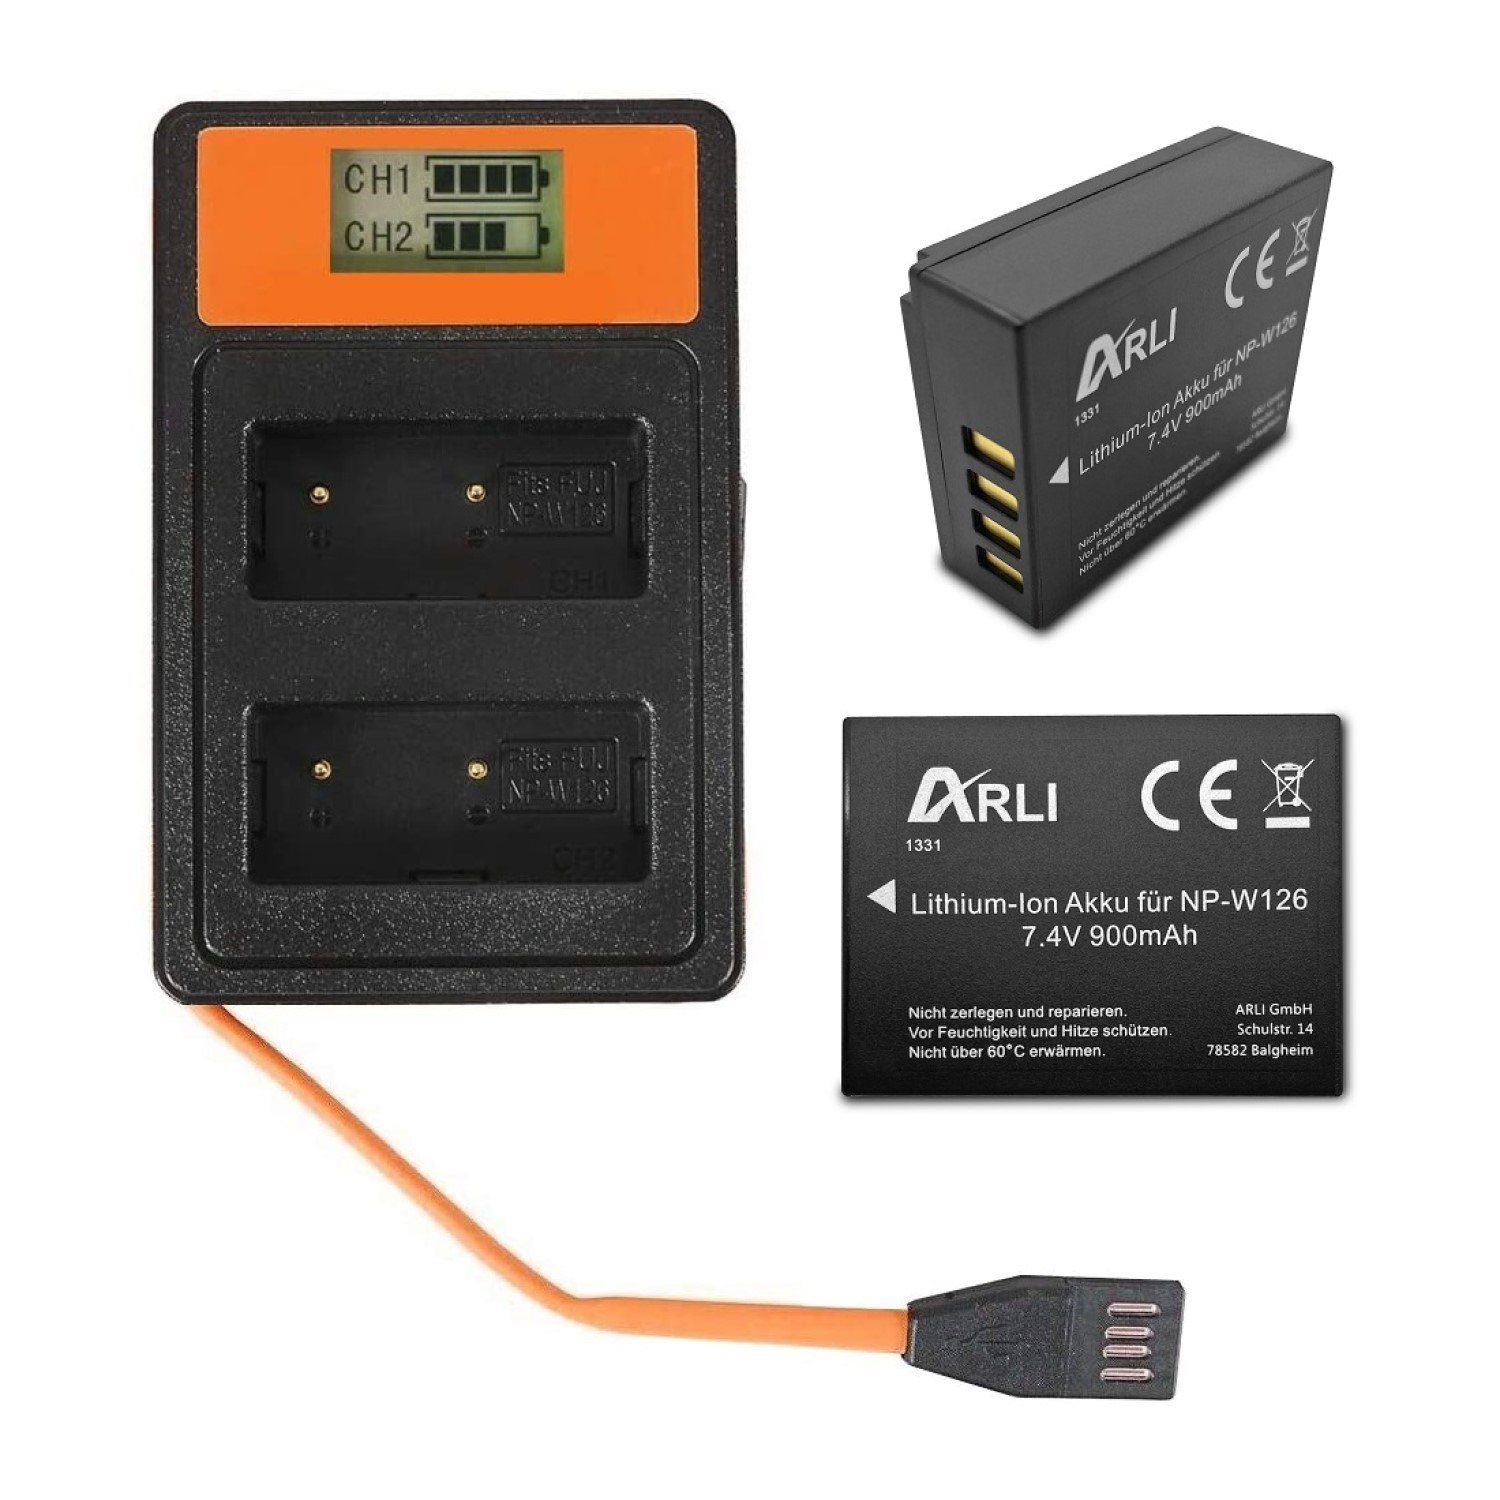 ARLI 2x Akku für Fuji NP-W126S NPW-126 + Smart Dual LCD USB Ladegerät Akku, 100% kompatibel passend Ersatzakku